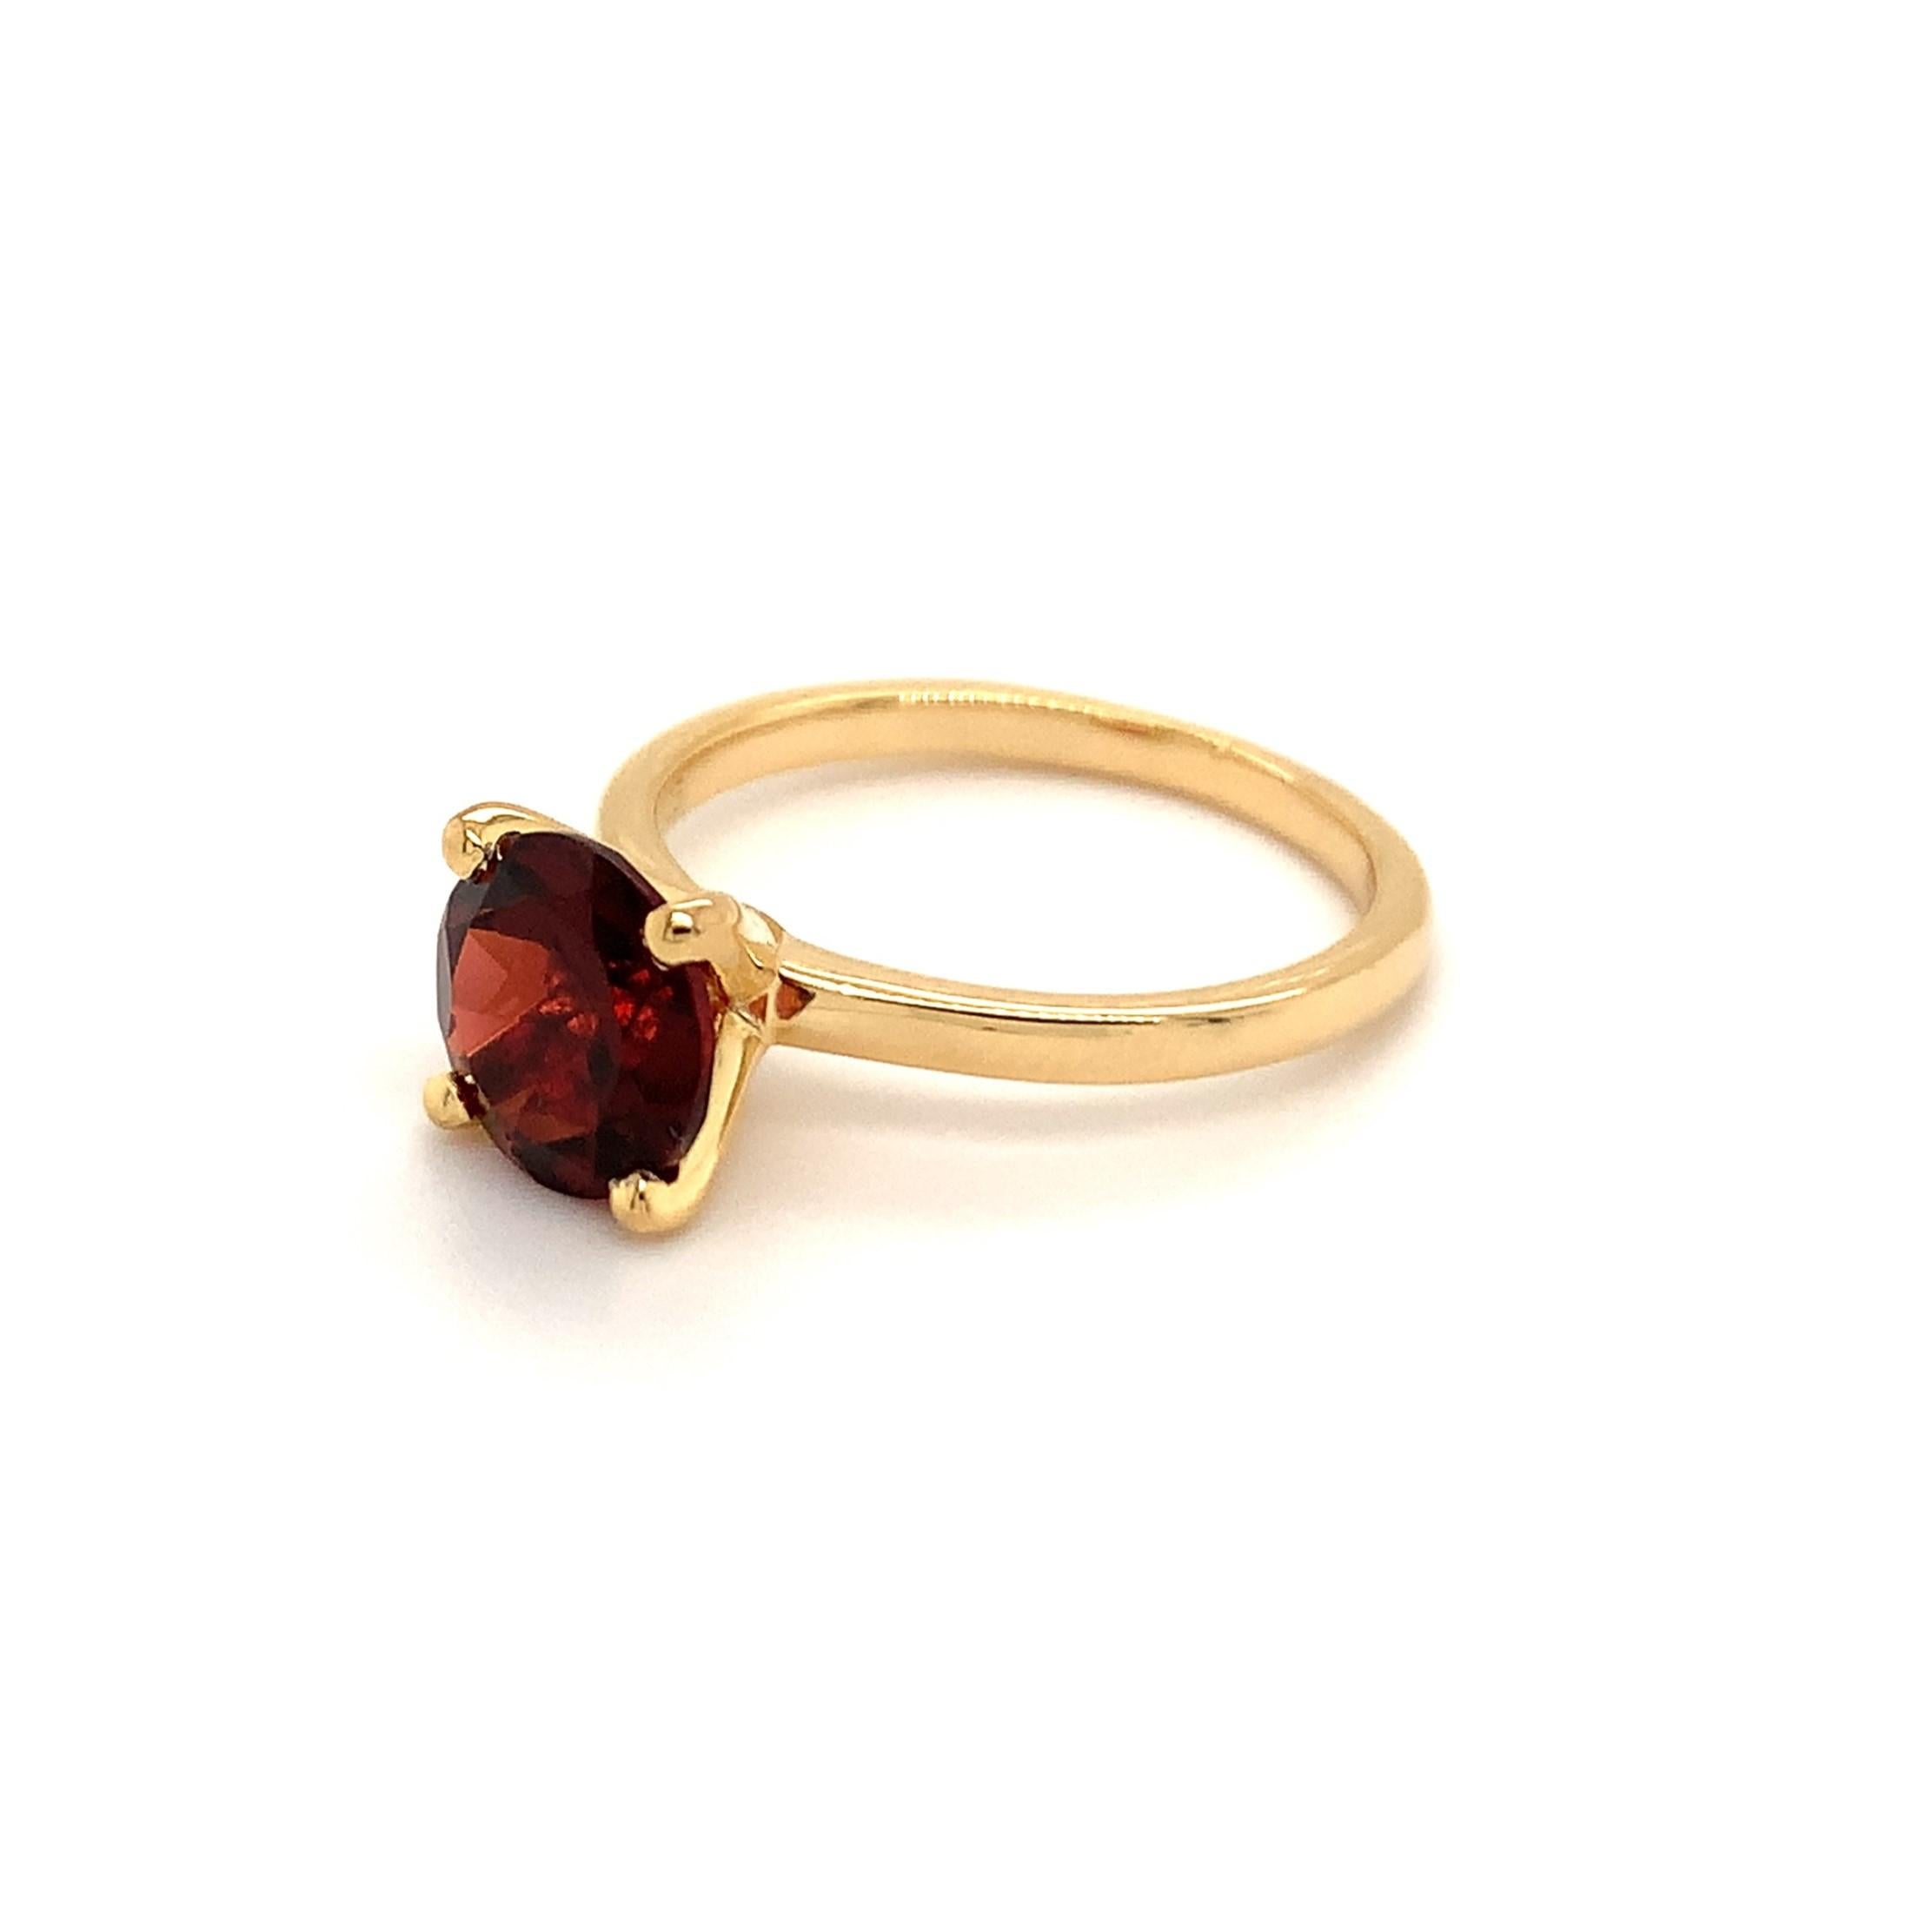 Runde Form Granat Edelstein schön in einem Ring gefertigt. Ein feurig roter Farbe Januar Birthstone. Für einen besonderen Anlass wie Verlobung oder Heiratsantrag oder als Geschenk für einen besonderen Menschen.

Primärsteingröße - 8x8mm